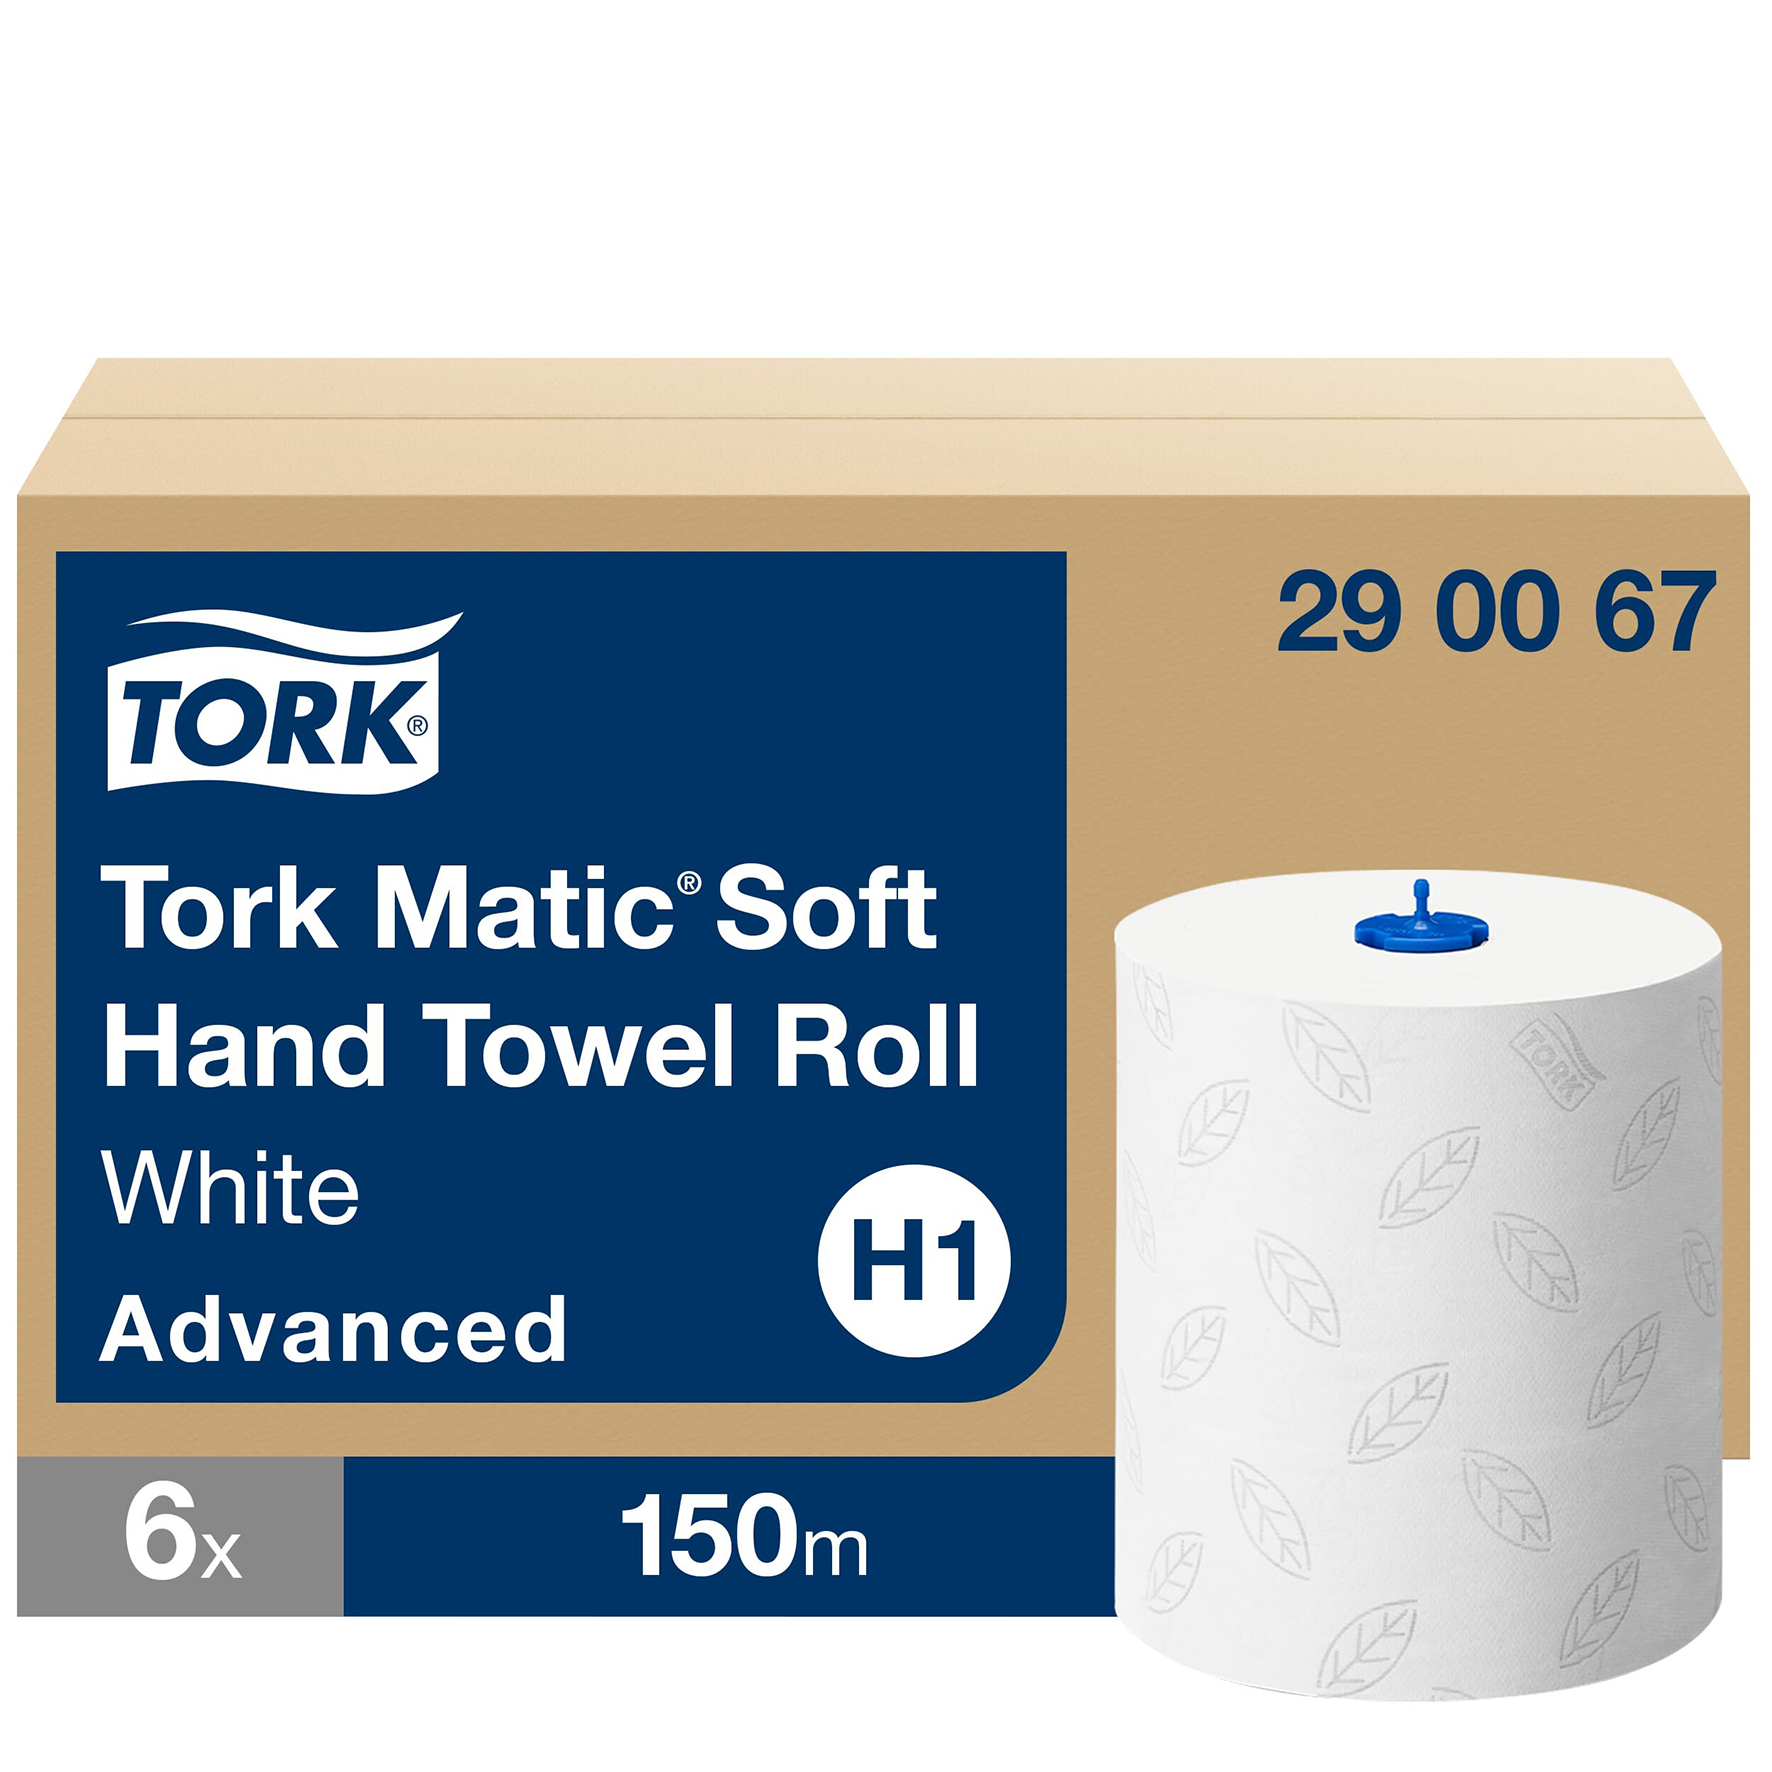 [2514118] Handduk Tork Advanced H1 6/kt